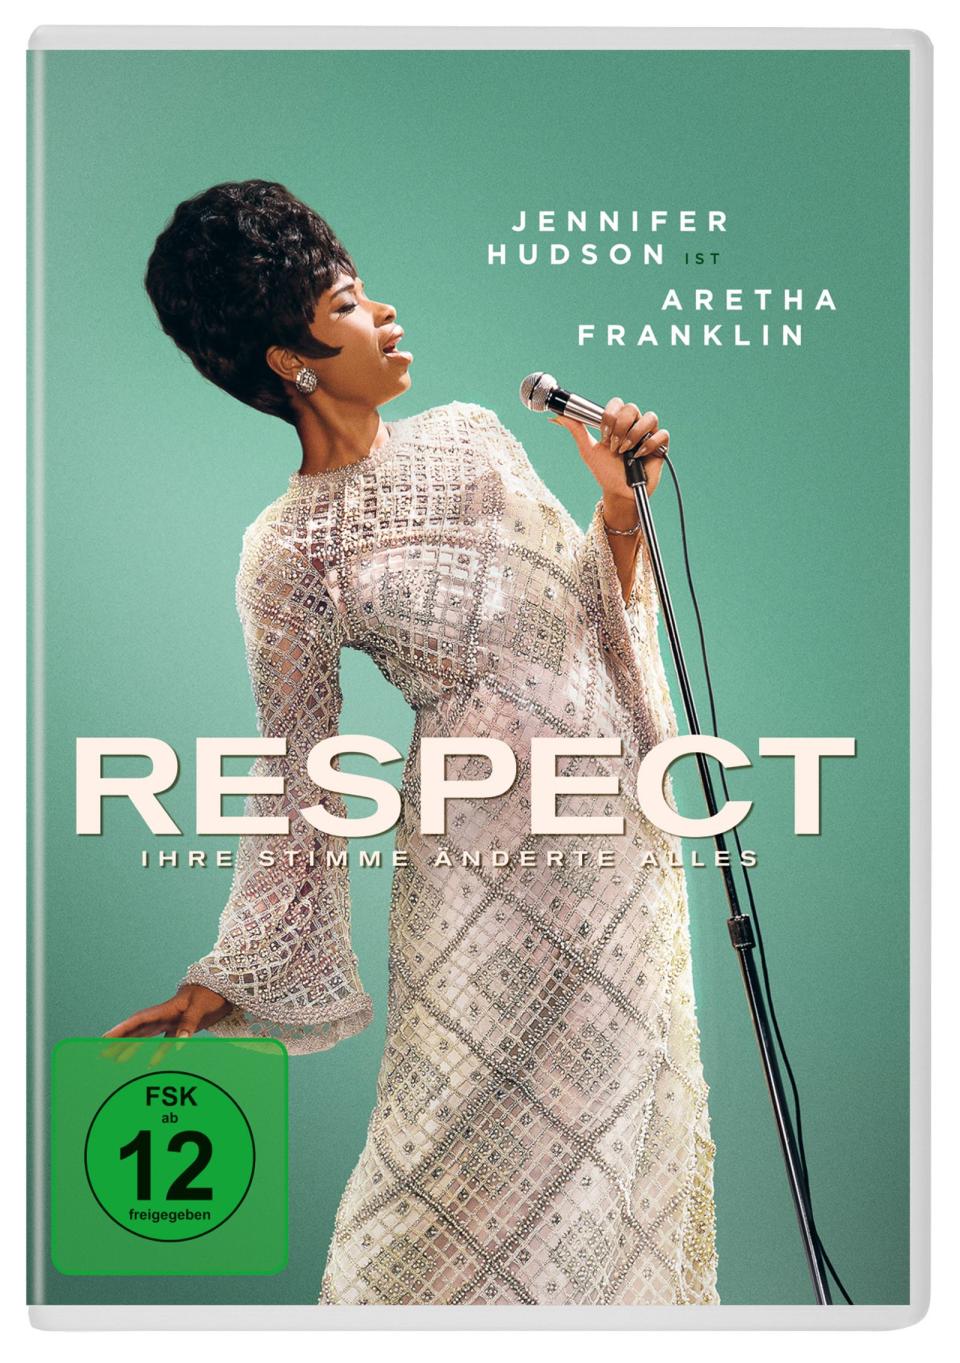 Jennifer Hudson verkörpert in "Respect" die Soul-Legende Aretha Franklin und begeistert mit ihrer Stimmgewalt. (Bild: Universal Pictures)